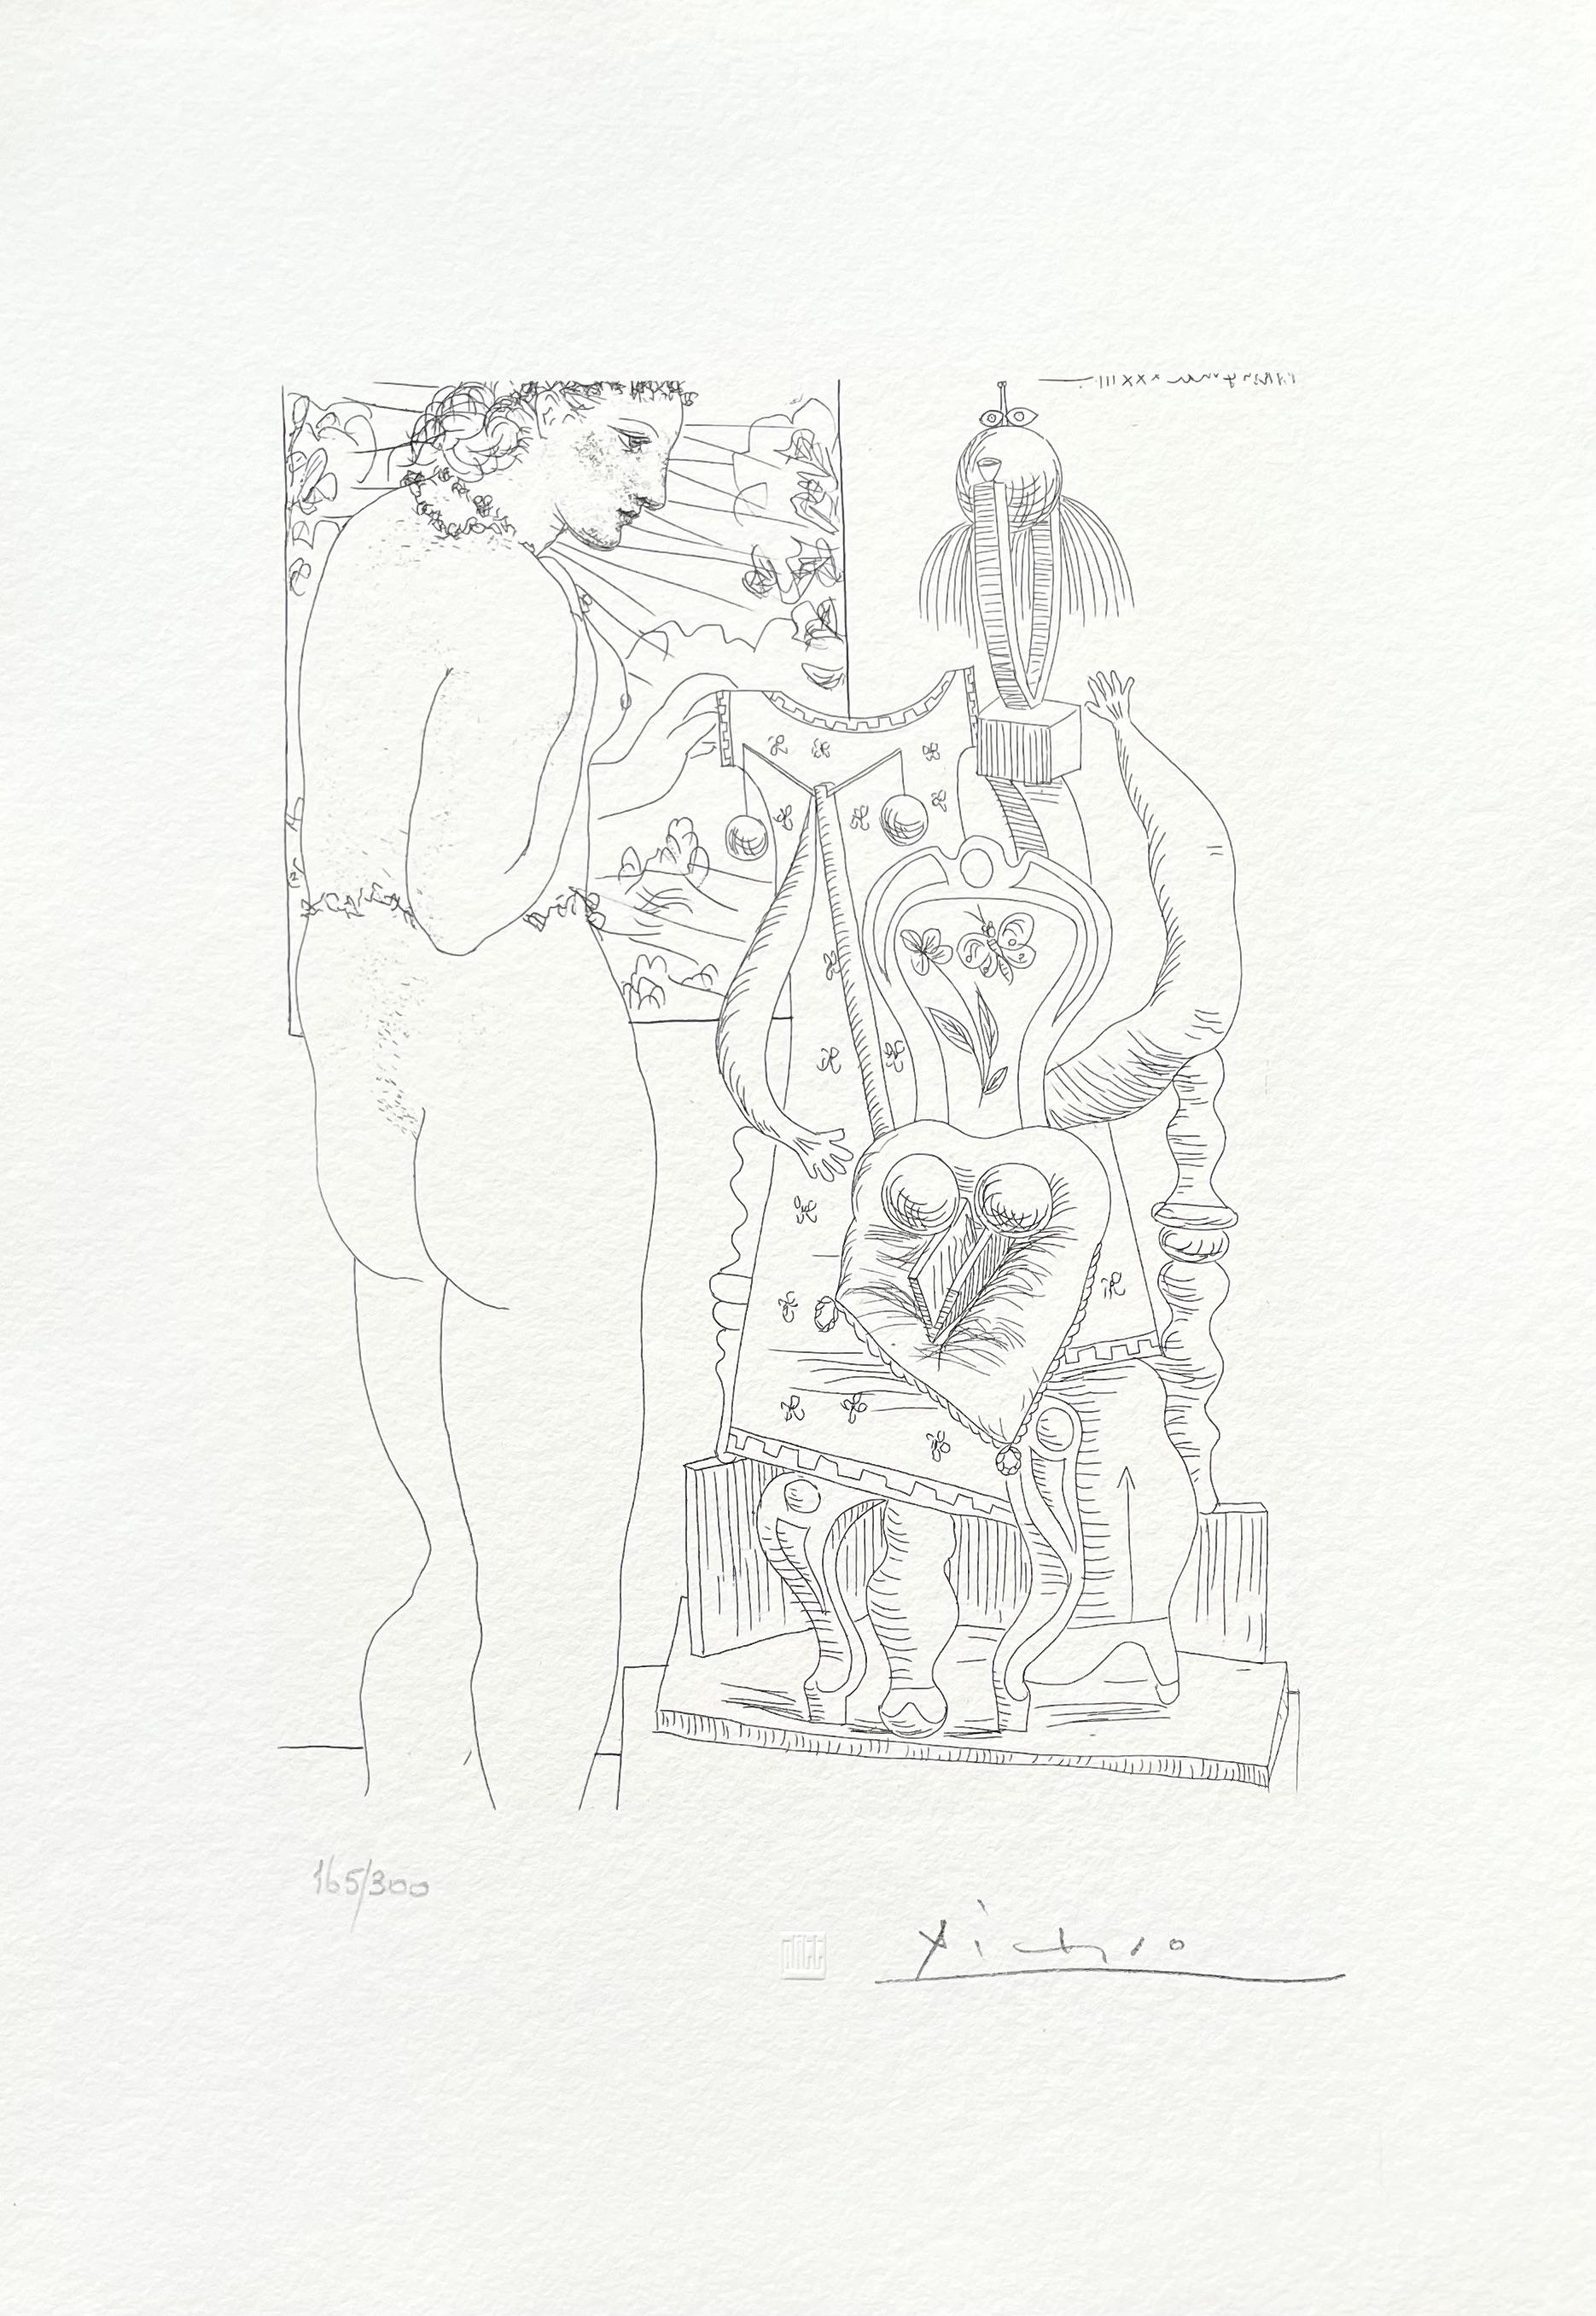 Picasso, Marie-Thérèse considérant son Effigie surréaliste sculptée (d'après) - Print de Pablo Picasso